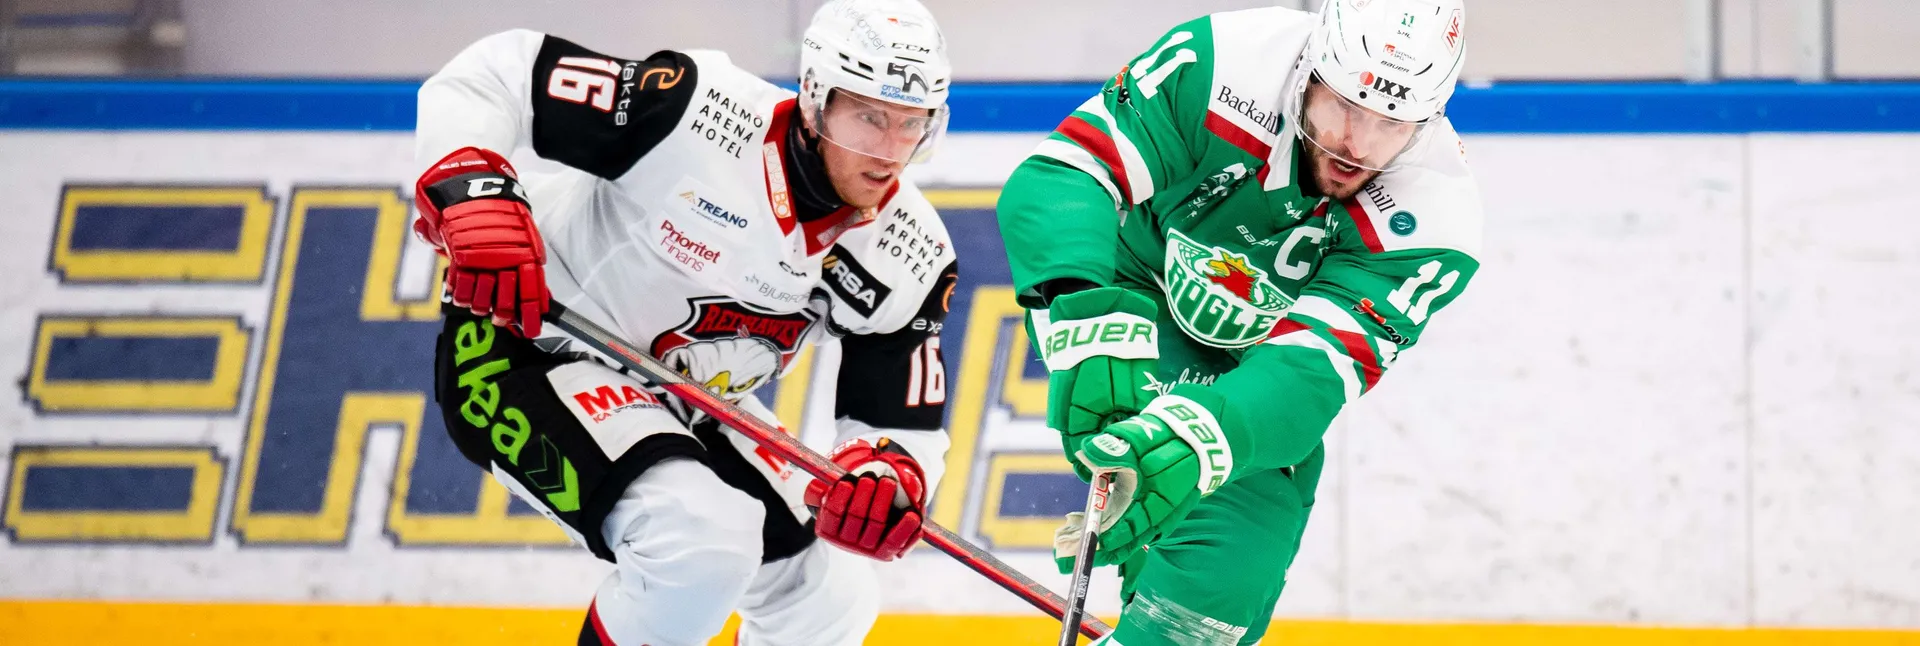 Ishockeymatch mellan Malmö och Rögle i SHL